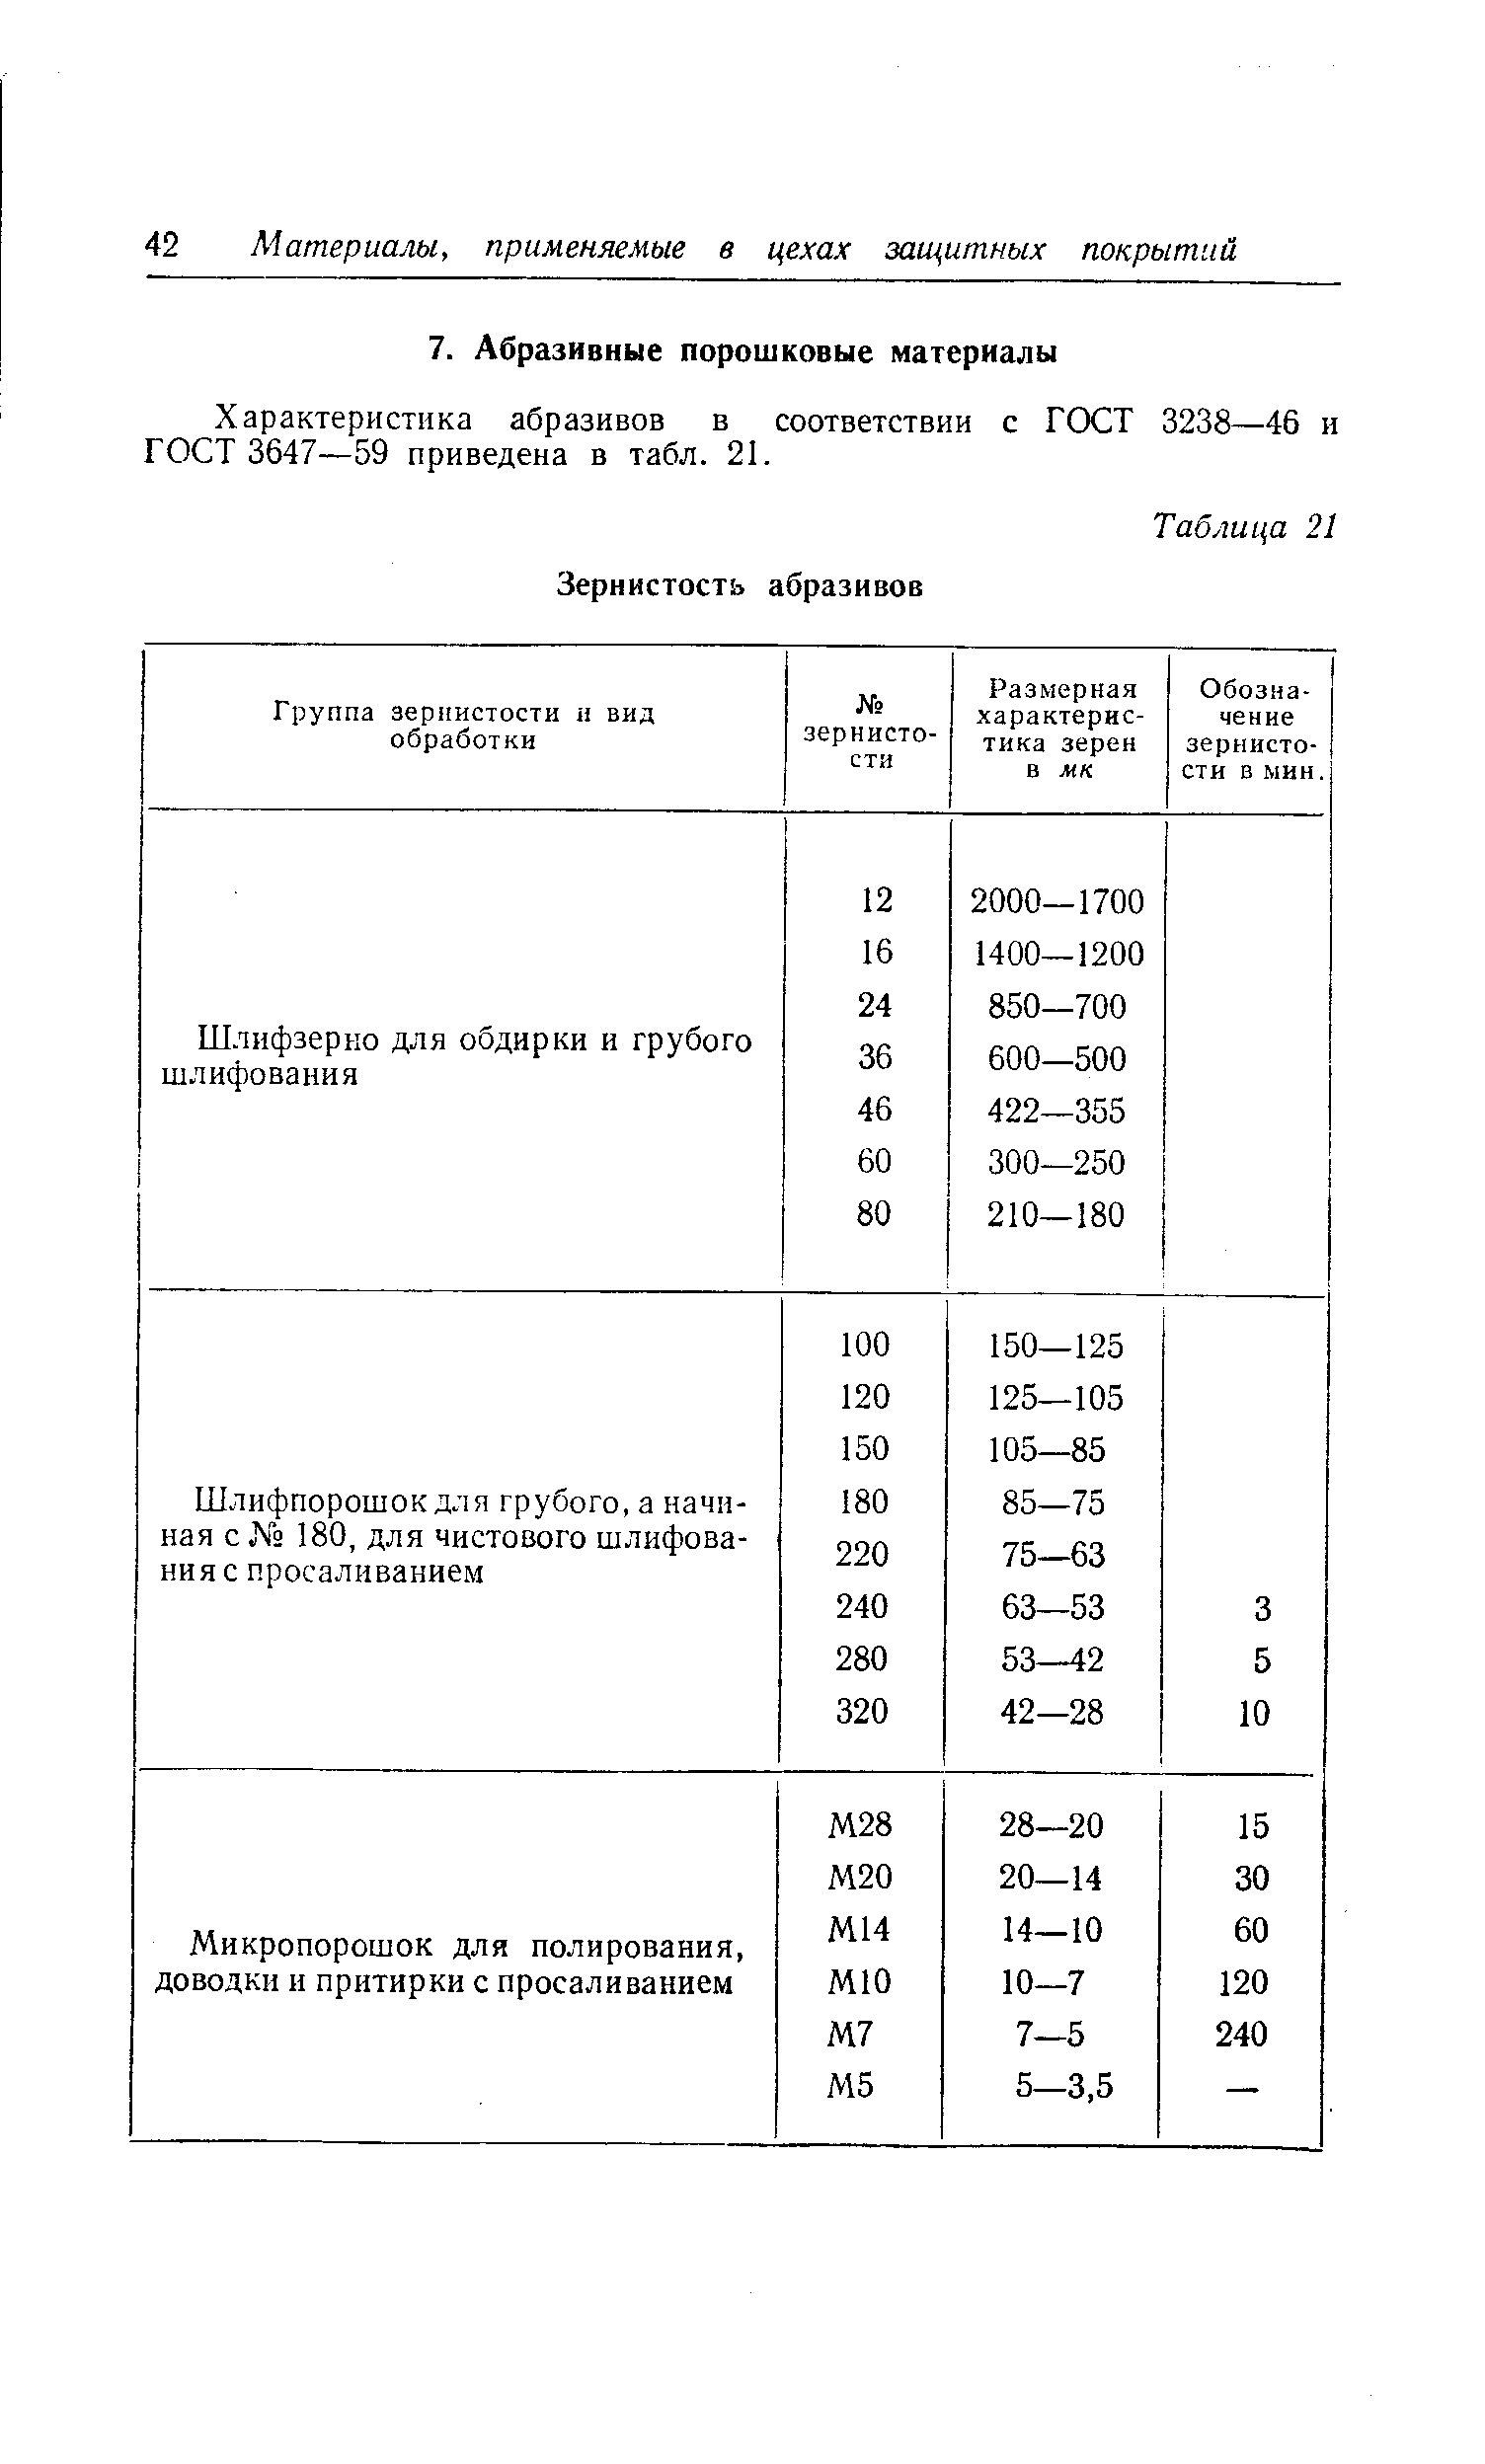 Характеристика абразивов в соответствии с ГОСТ 3238—46 и ГОСТ 3647—59 приведена в табл. 21.
